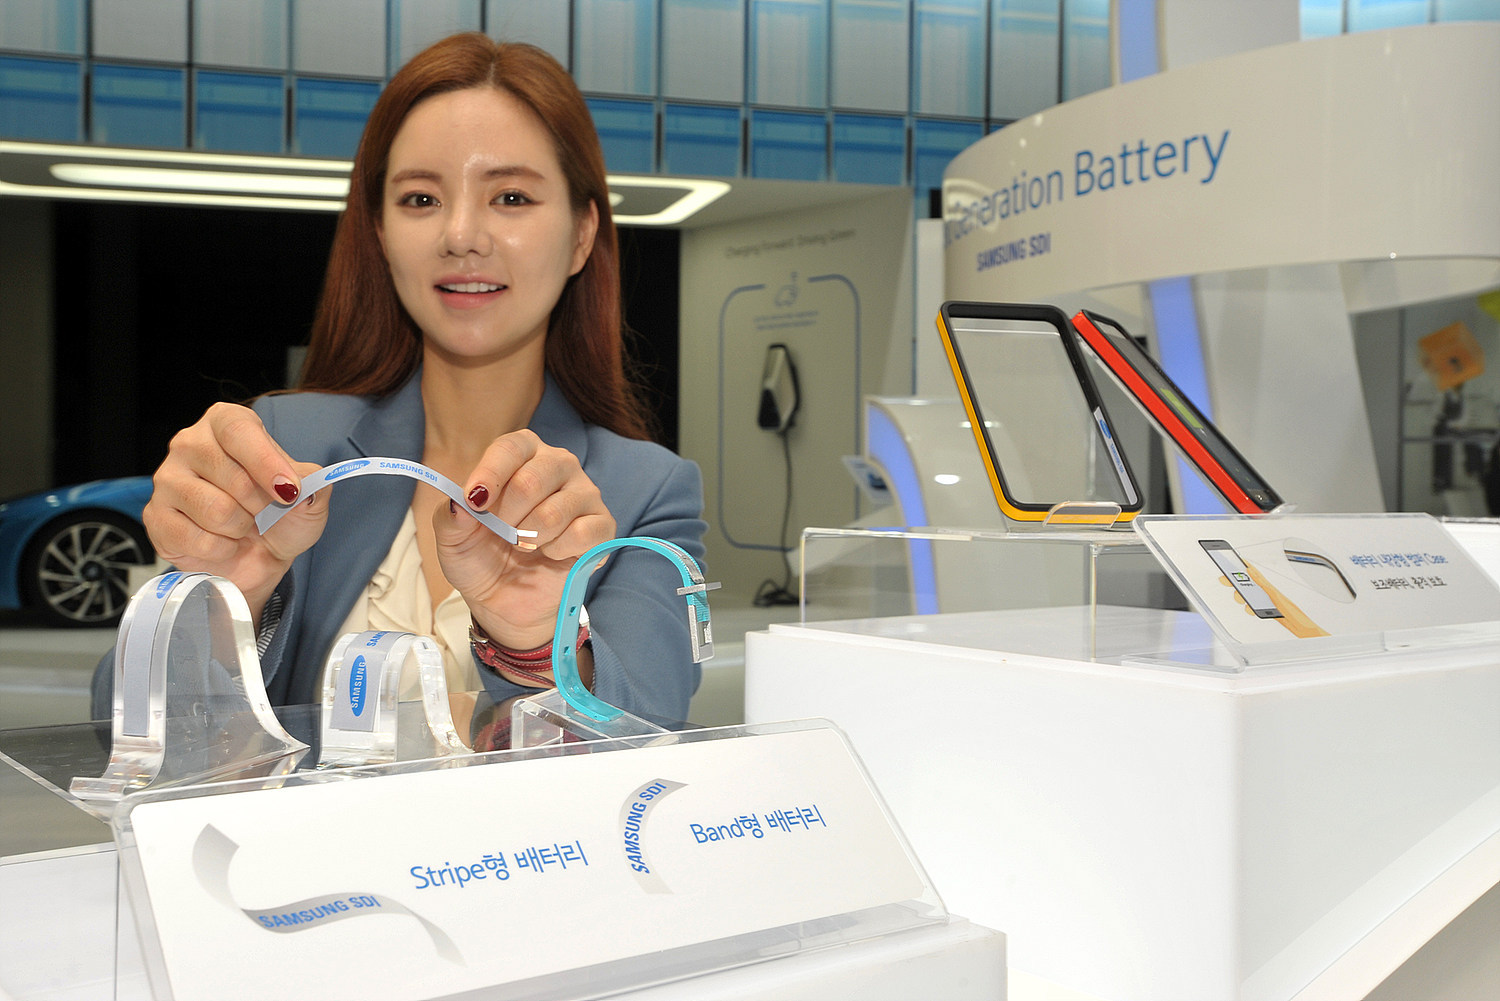 Dans les mains de cette démonstratrice sur le stand de Samsung, la batterie flexible Stripe exhibe sa souplesse. Sur les présentoirs, des bracelets de montres sont équipés de l'autre modèle, Band. © Business Wire